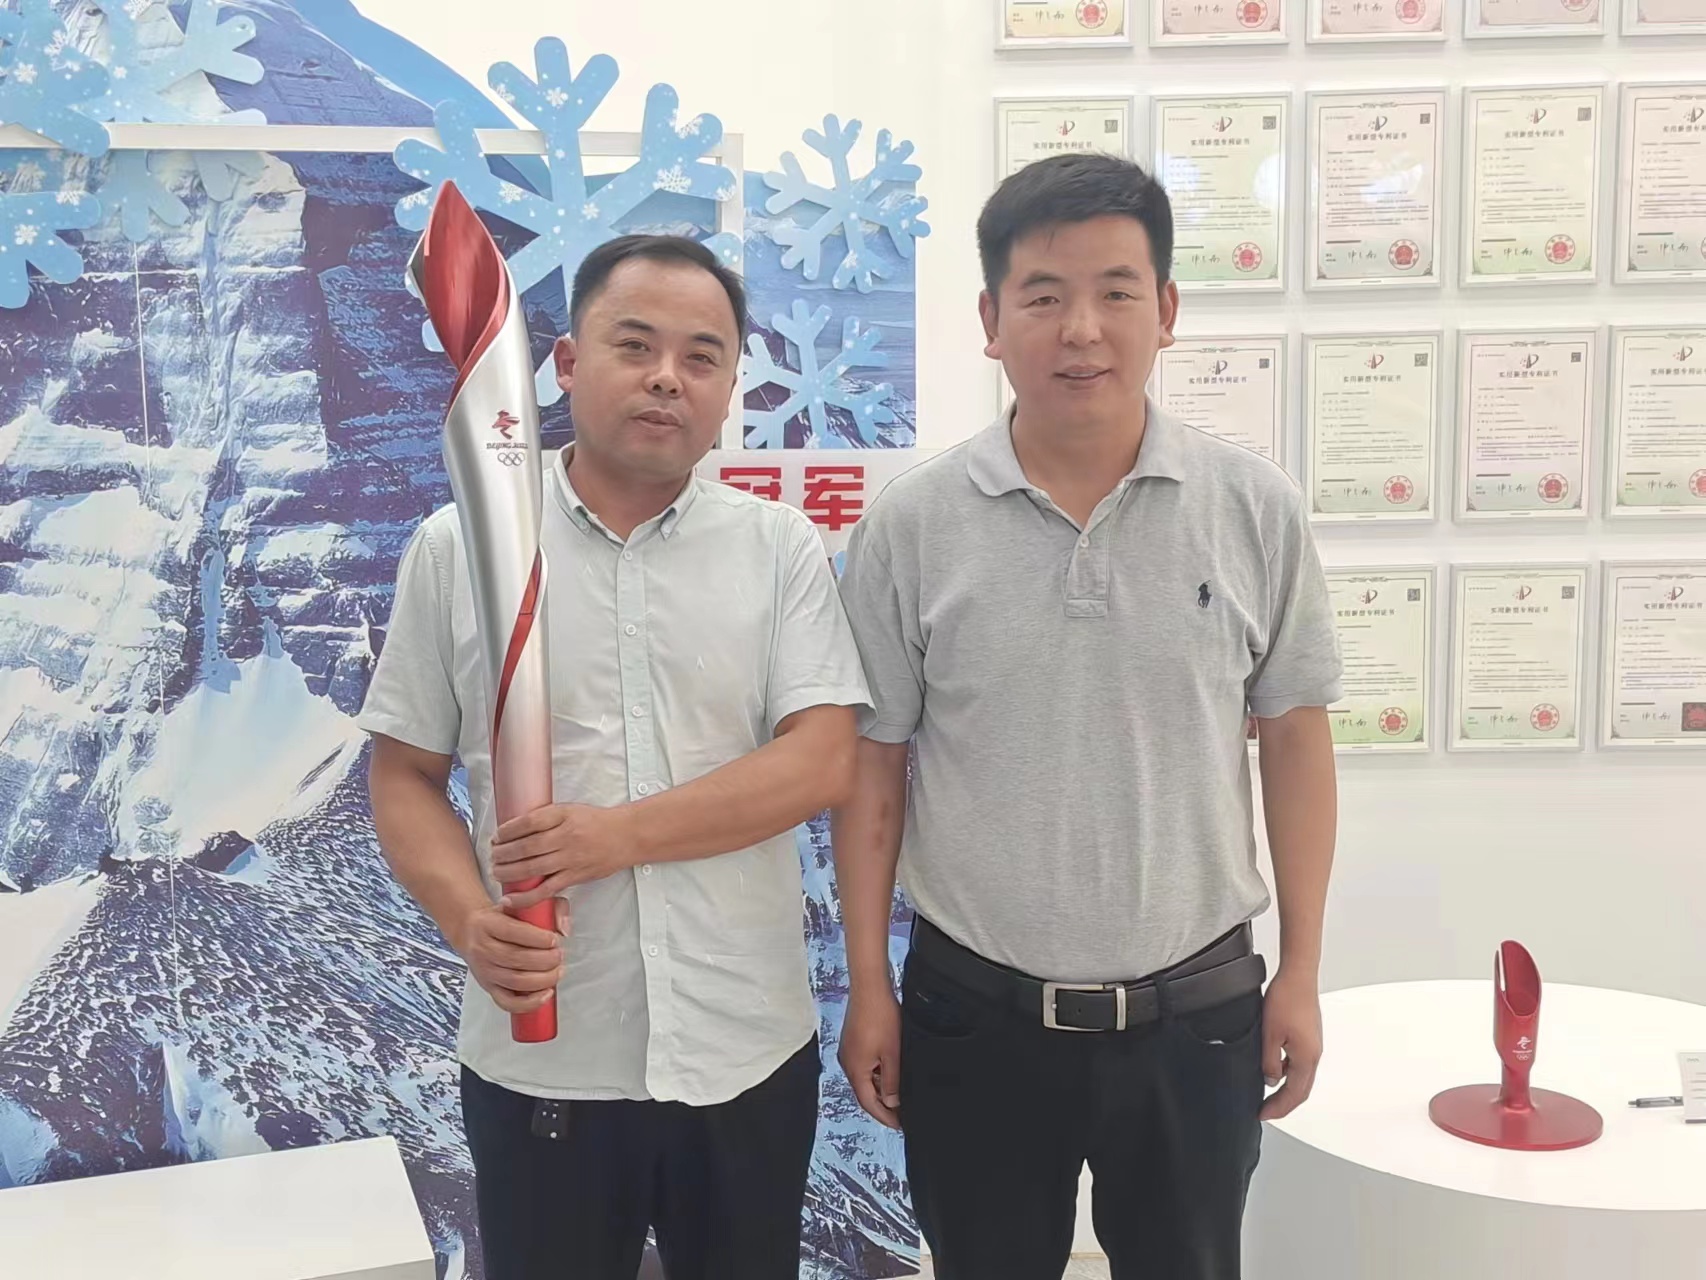 公司总经理张俊峰与夸克新材料有限公司总经理卢明振交流合影。